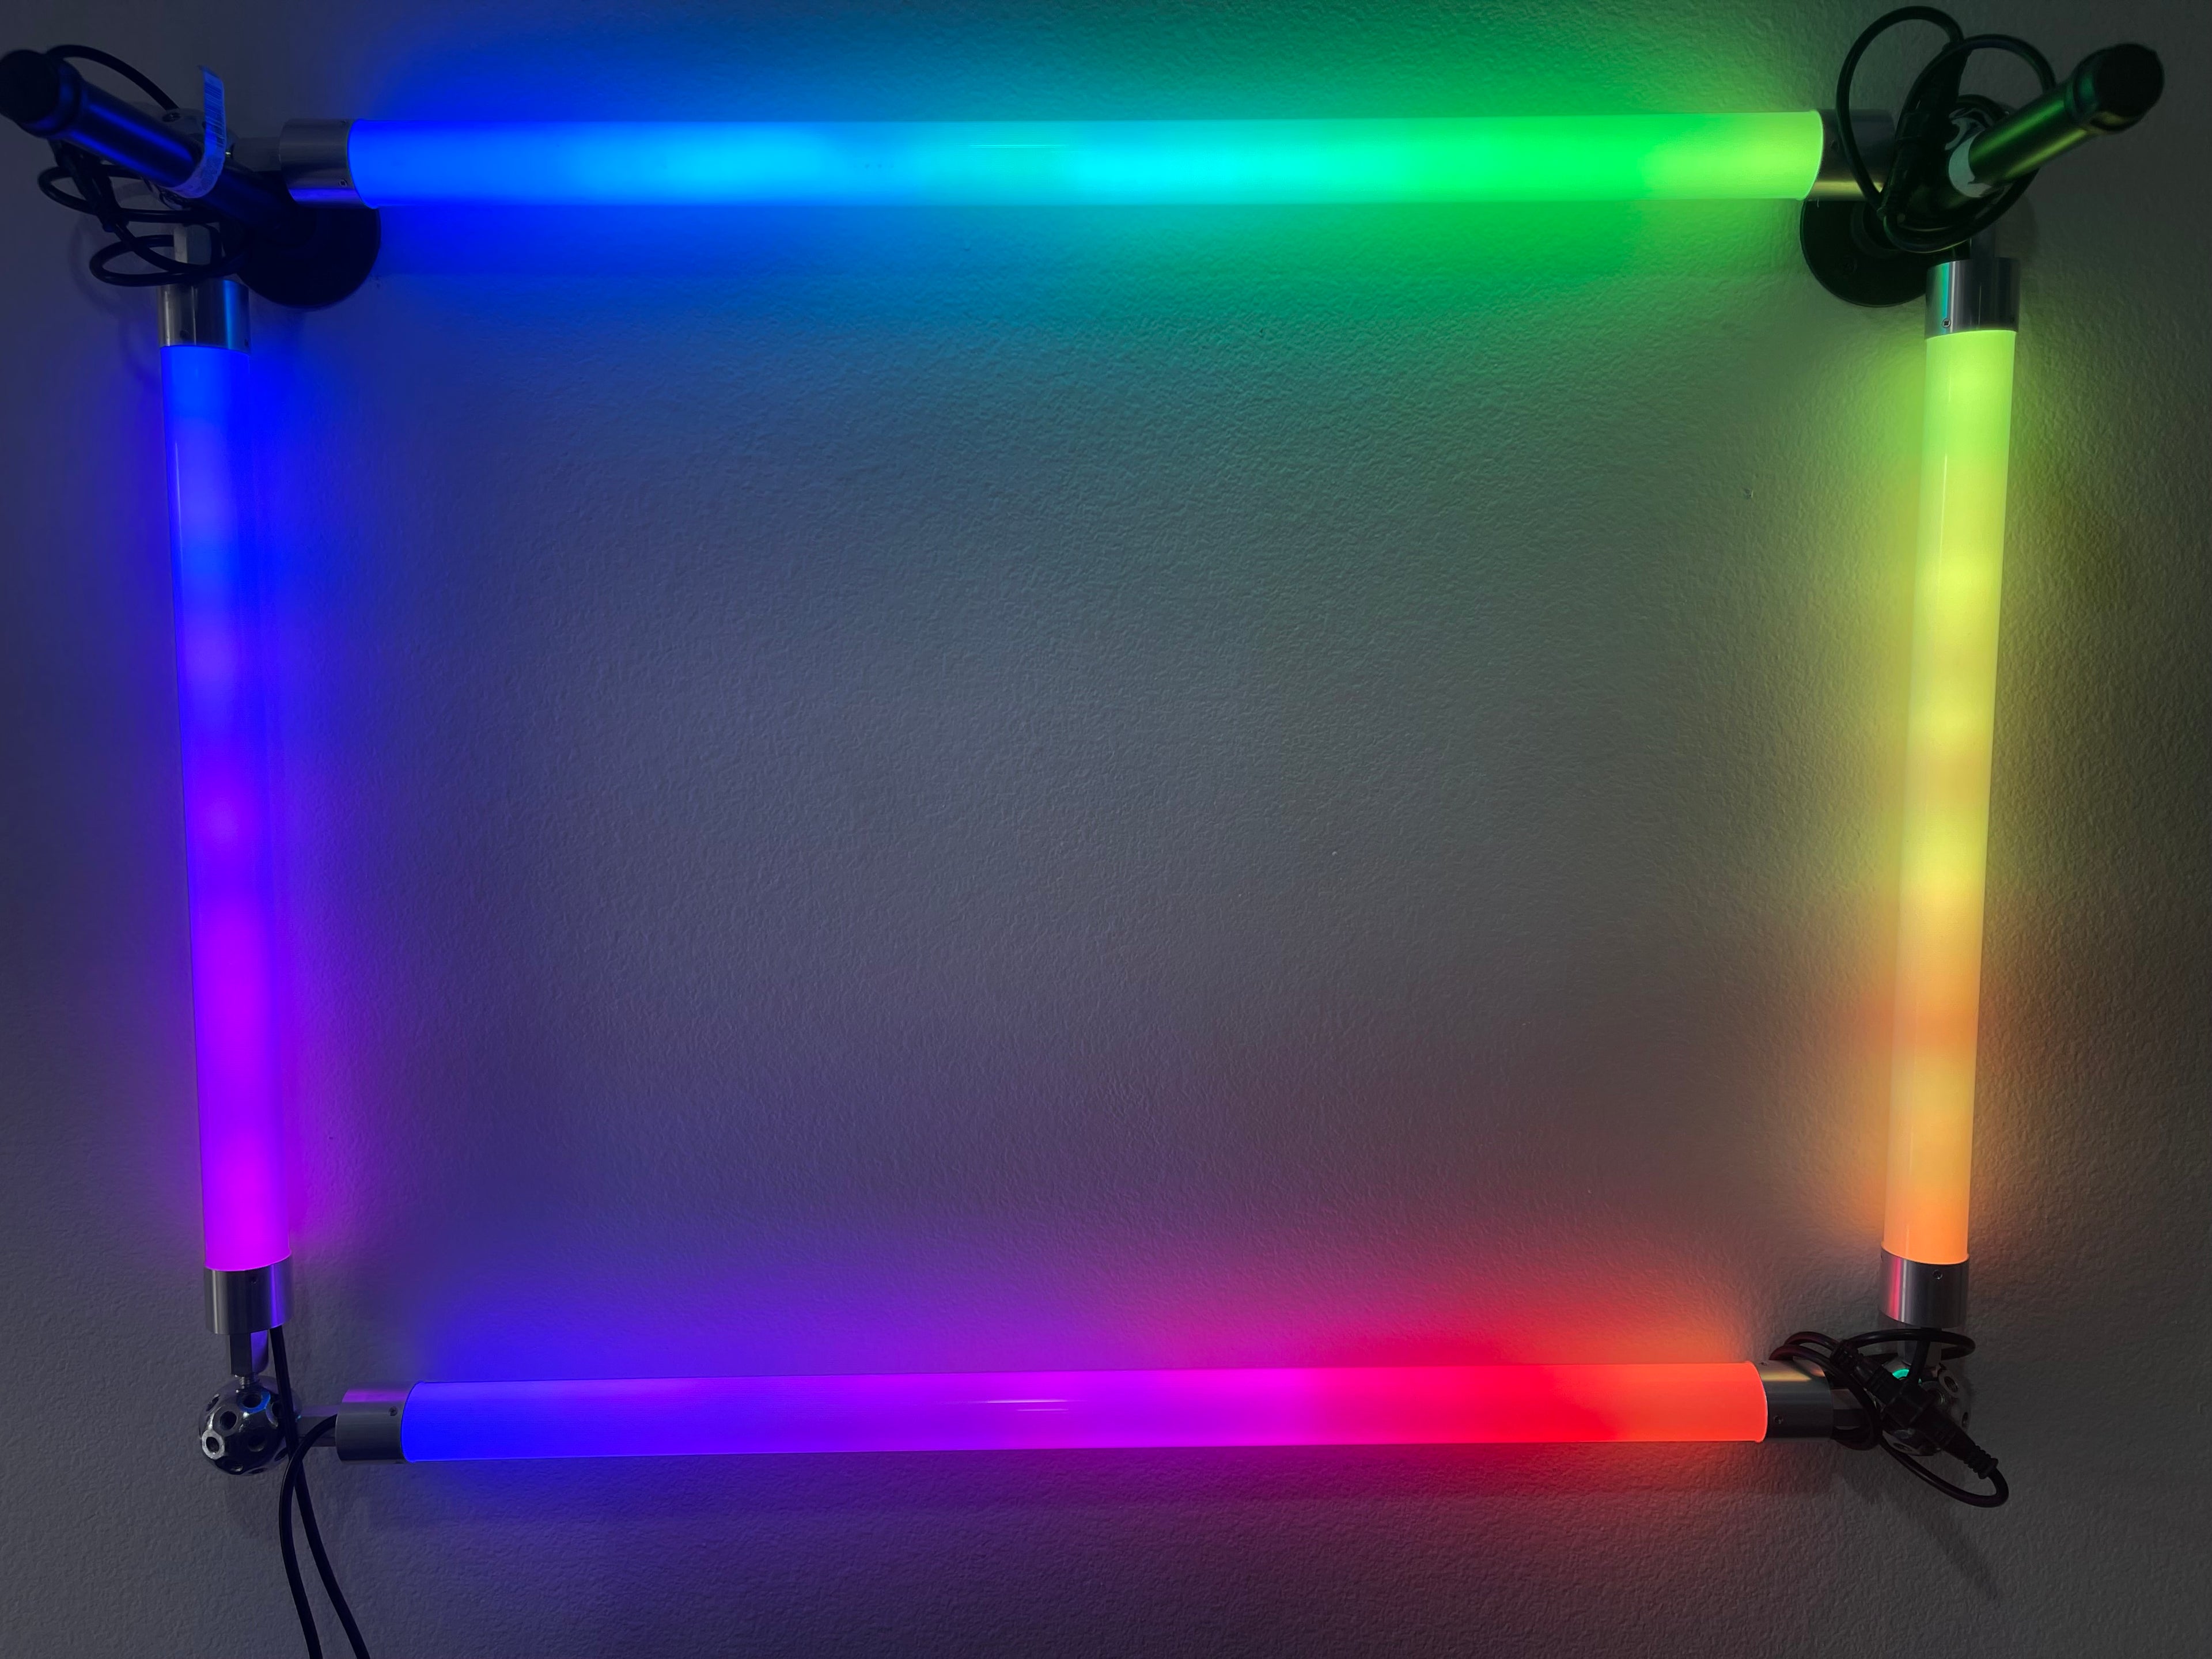 Nova Bright Full Spectrum White 5054SMD Flexible LED Light Strip 16ft –  Wholesale LEDs